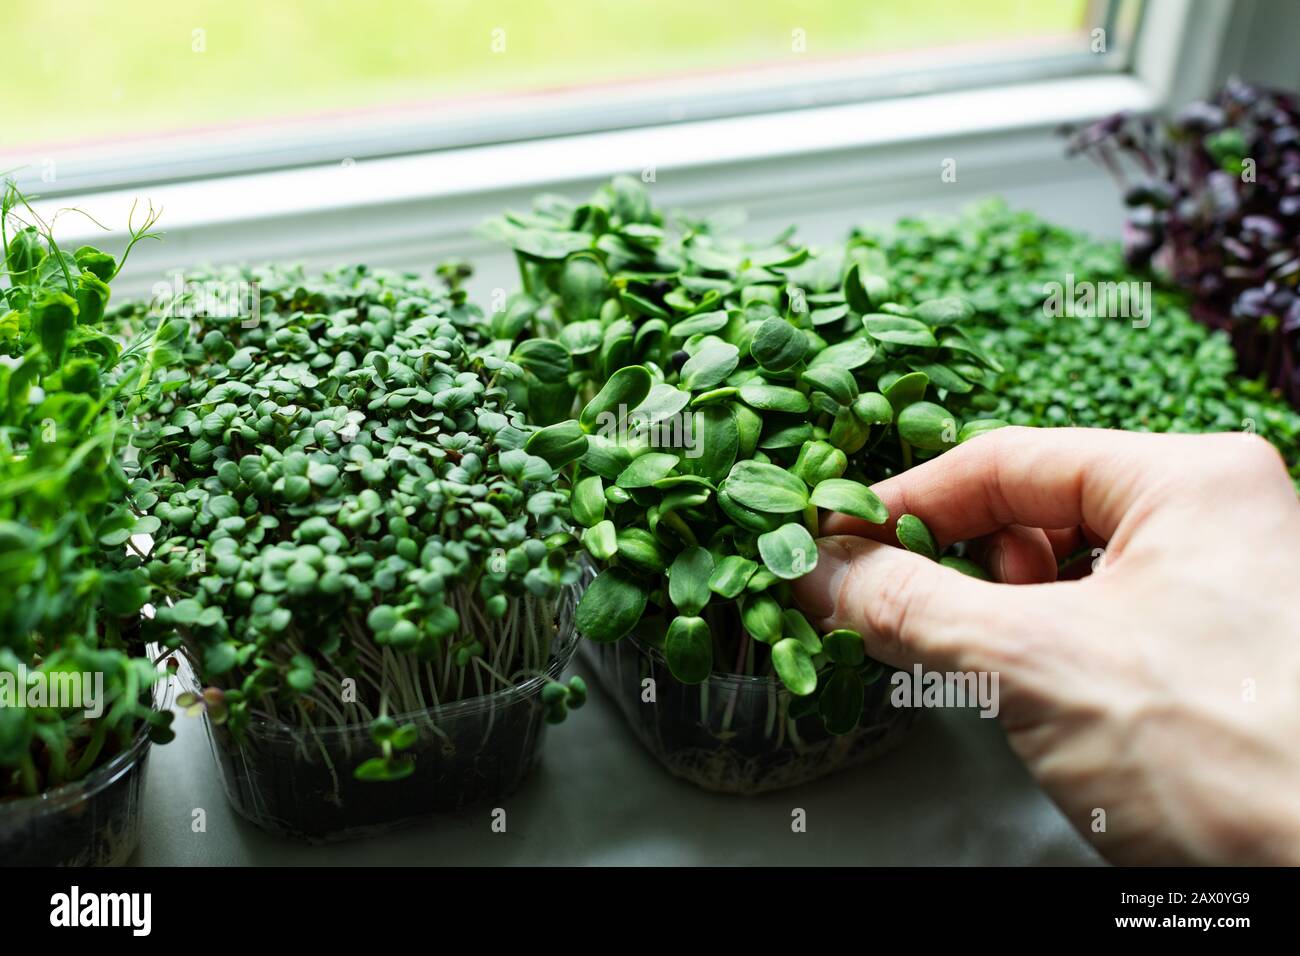 kitchen garden - microgreens growing on windowsill Stock Photo